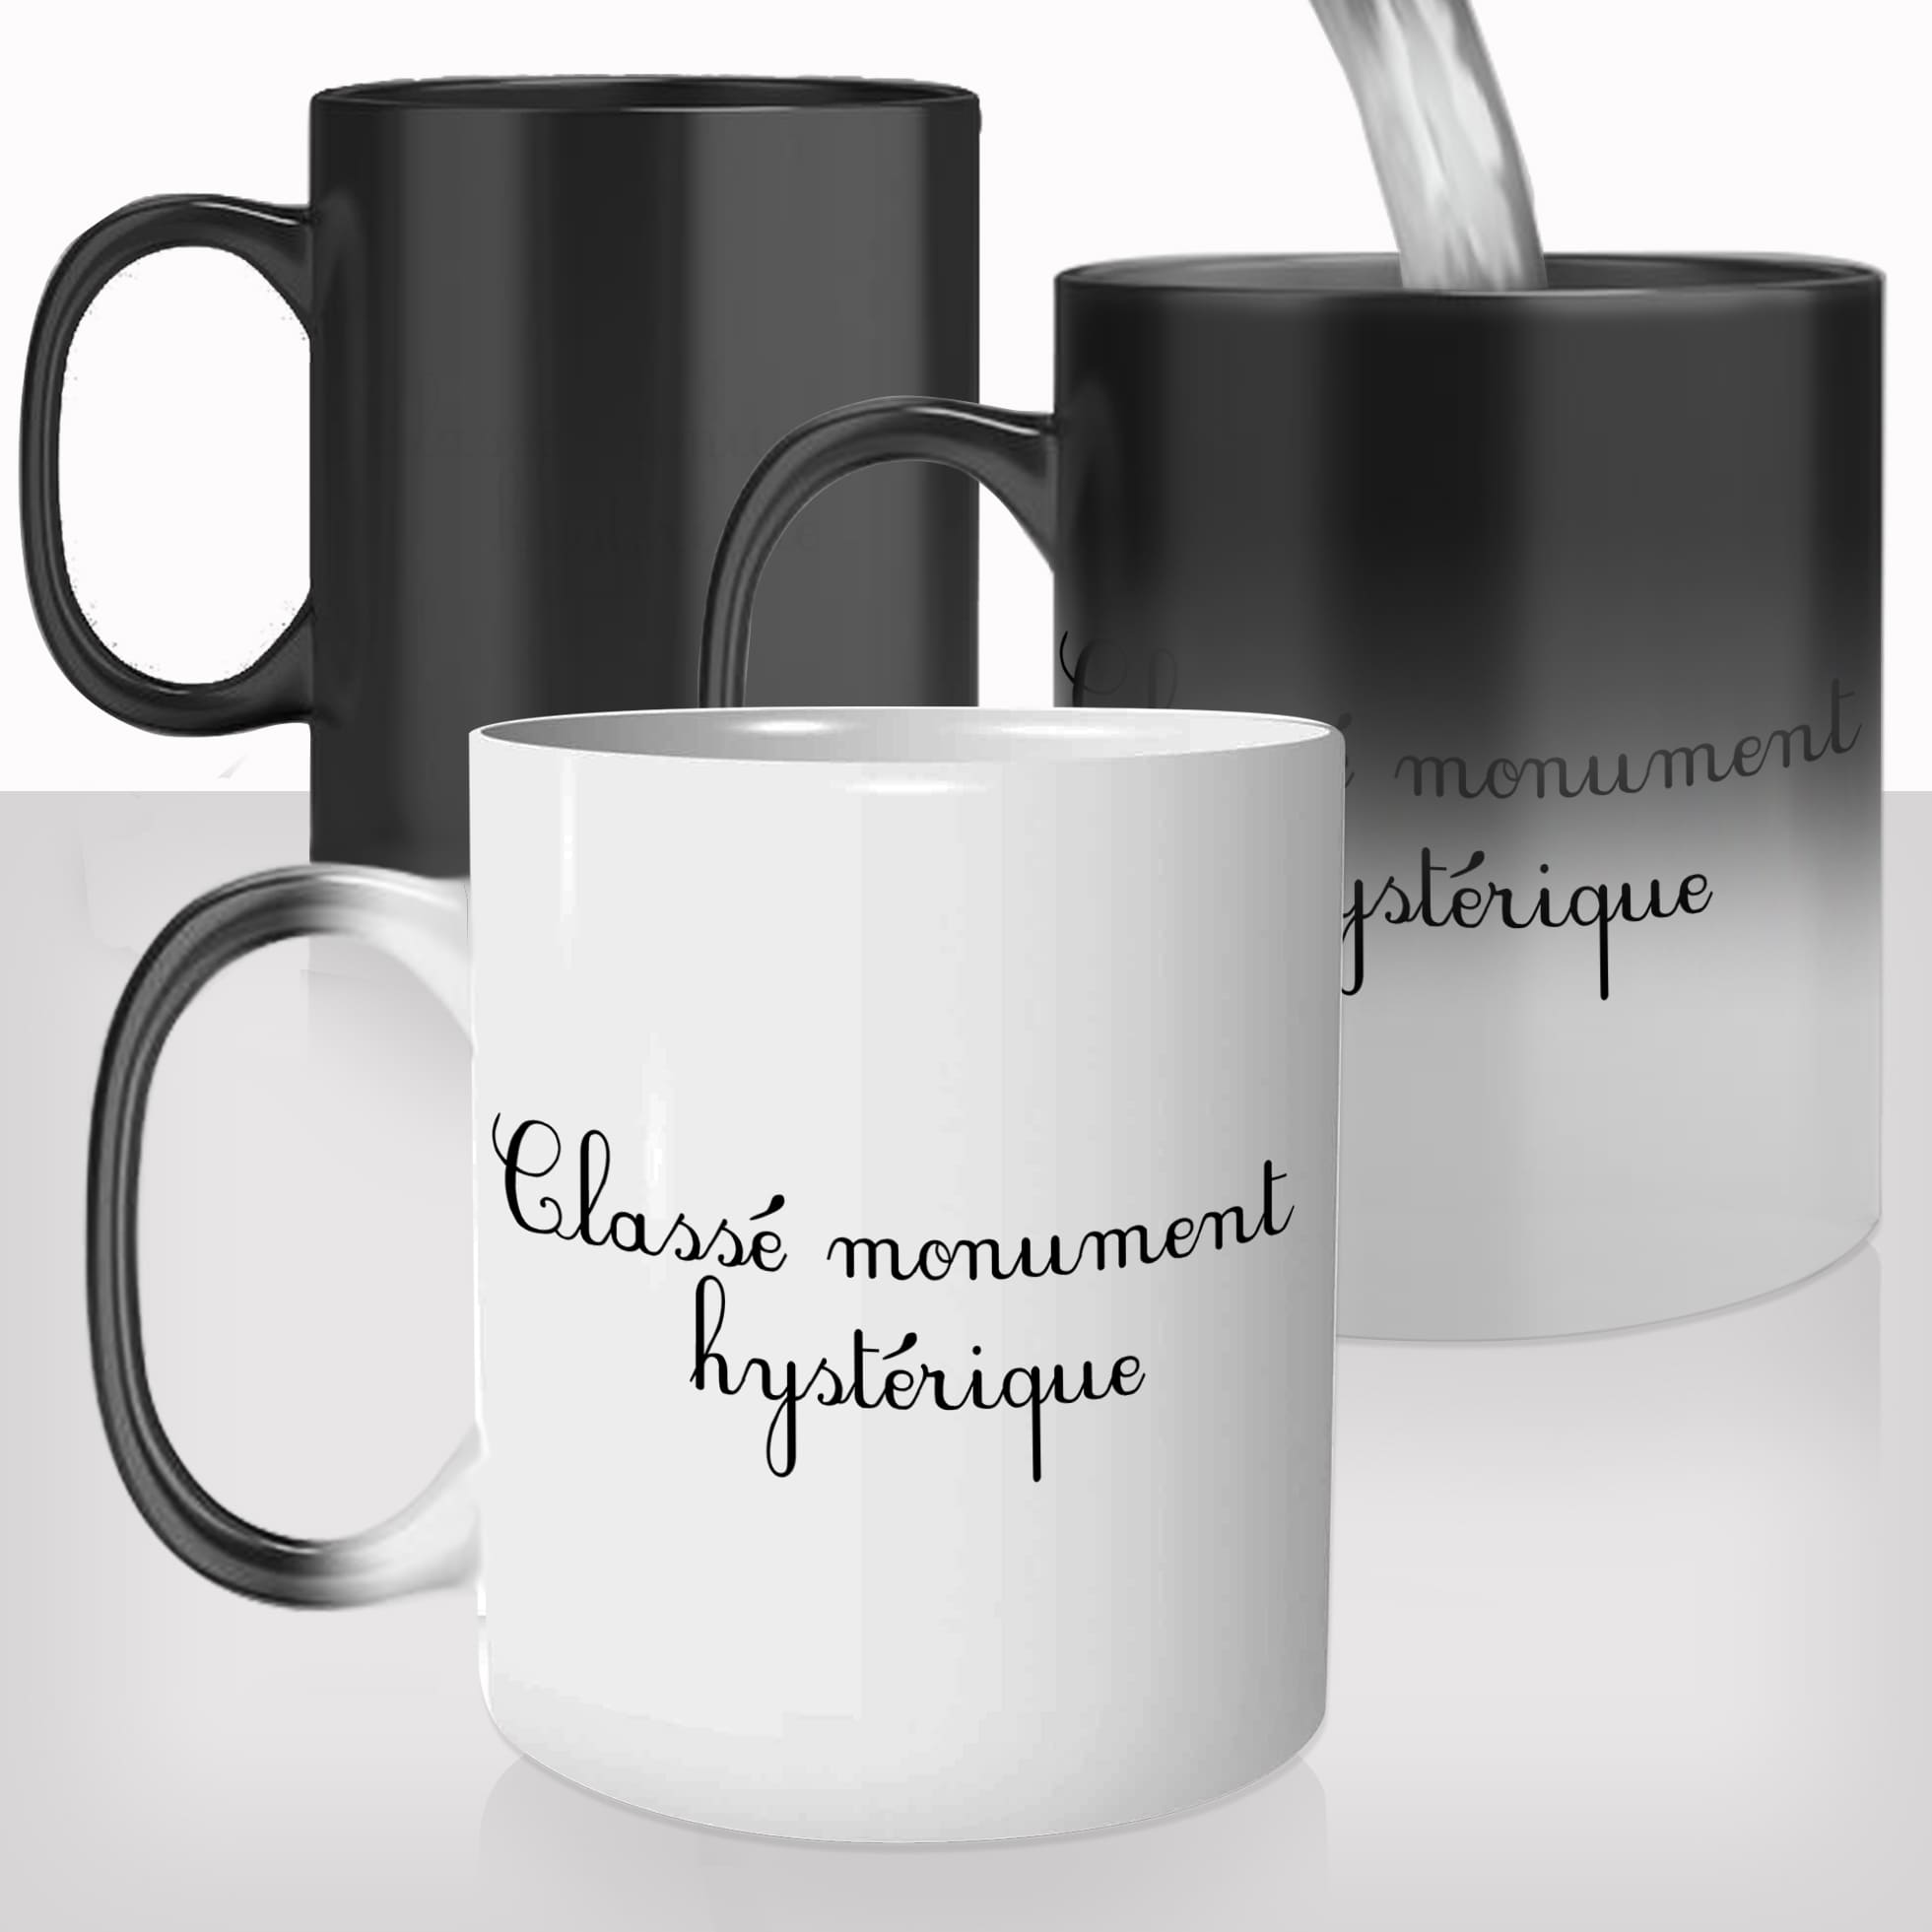 mug-magique-magic-tasse-thermo-reactif-drole-femme-classé-monument-hystérique-chiante-photo-personnalisable-copine-cadeau-original-fun